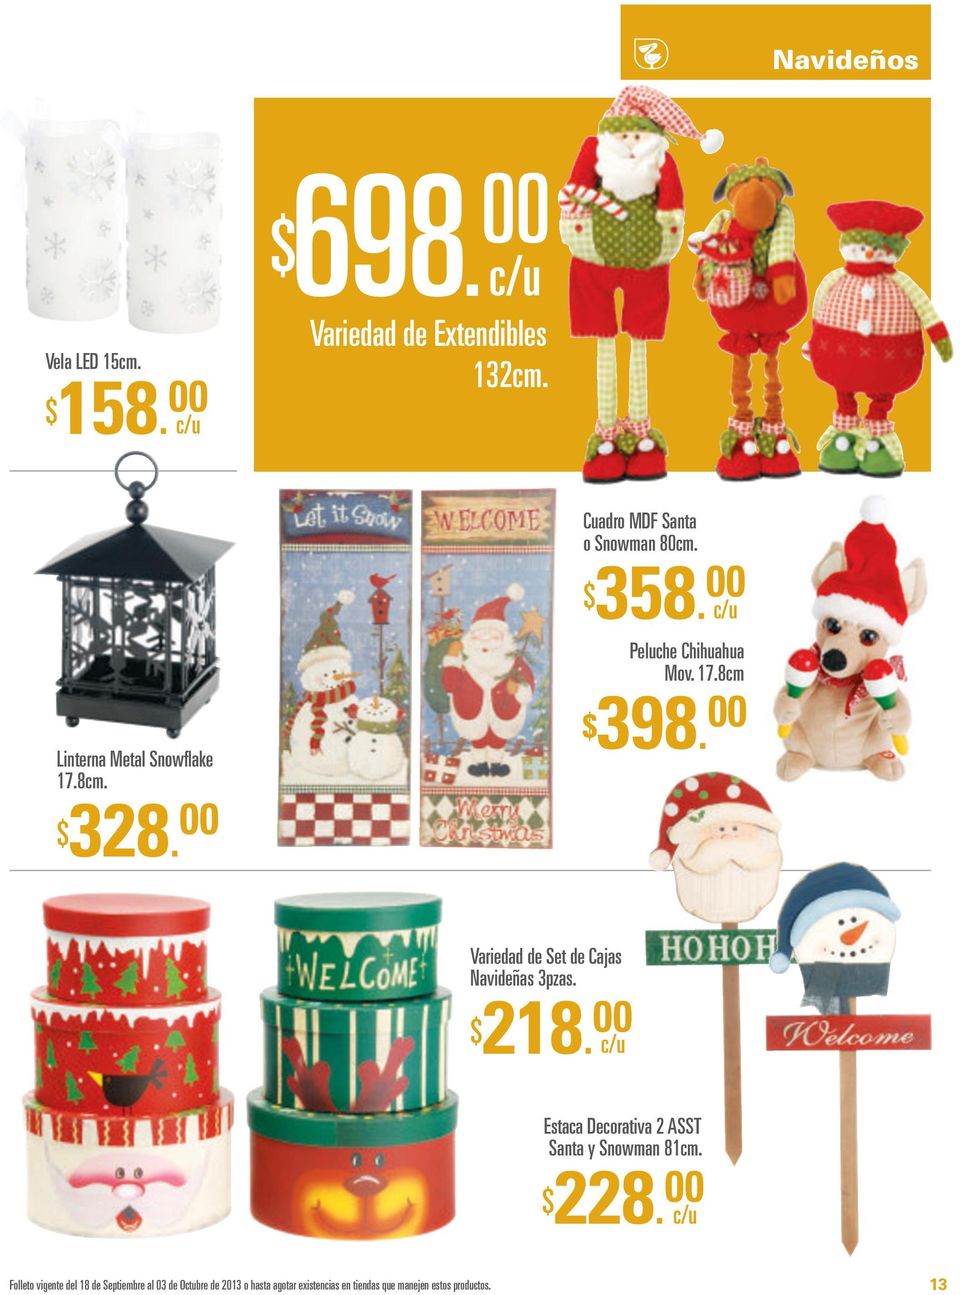 Variedad de Set de Cajas Navideñas 3pzas. $ 218. Estaca Decorativa 2 ASST Santa y Snowman 81cm. $ 228.